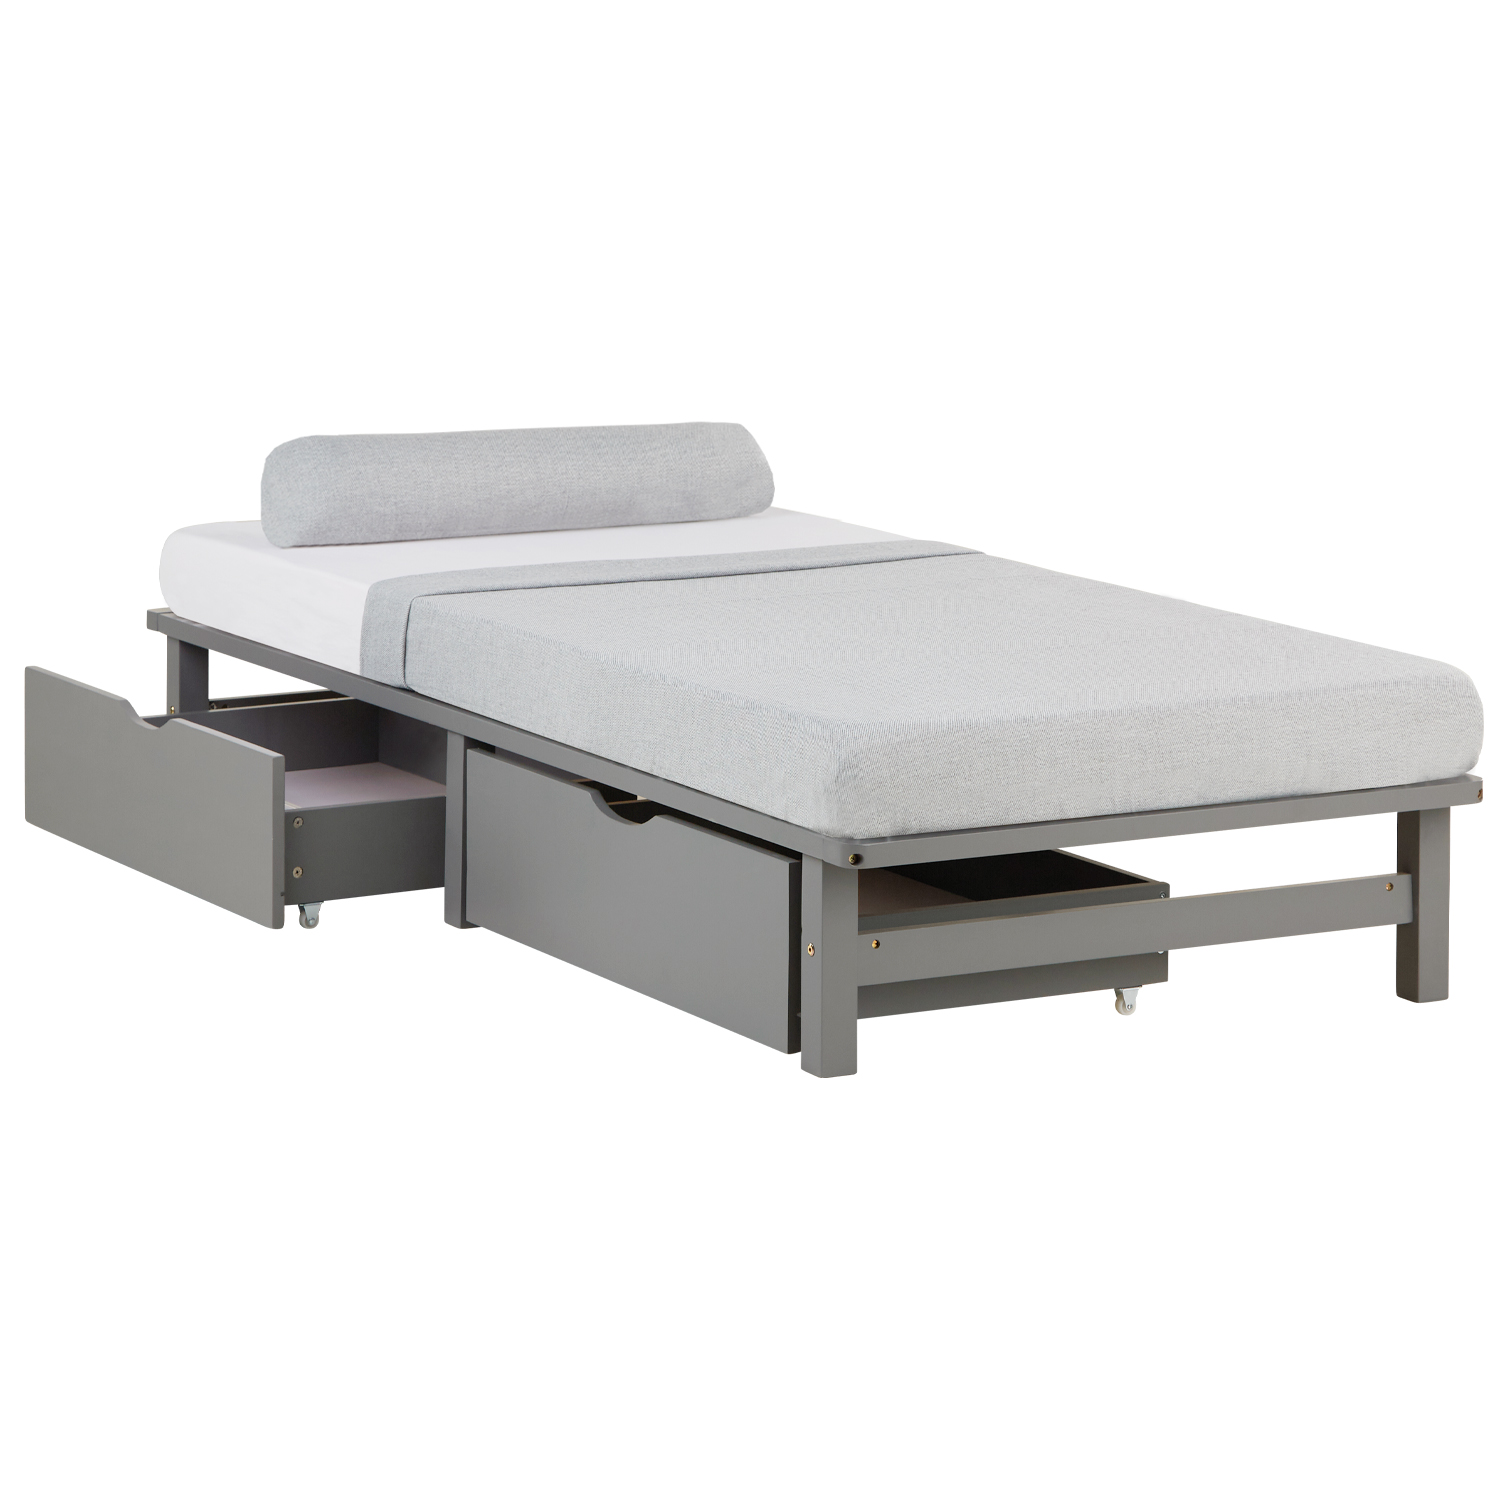 Palettenbett 90x200 cm mit Bettkasten 2er Set Lattenrost Holzbett Grau Palettenmöbel Bett